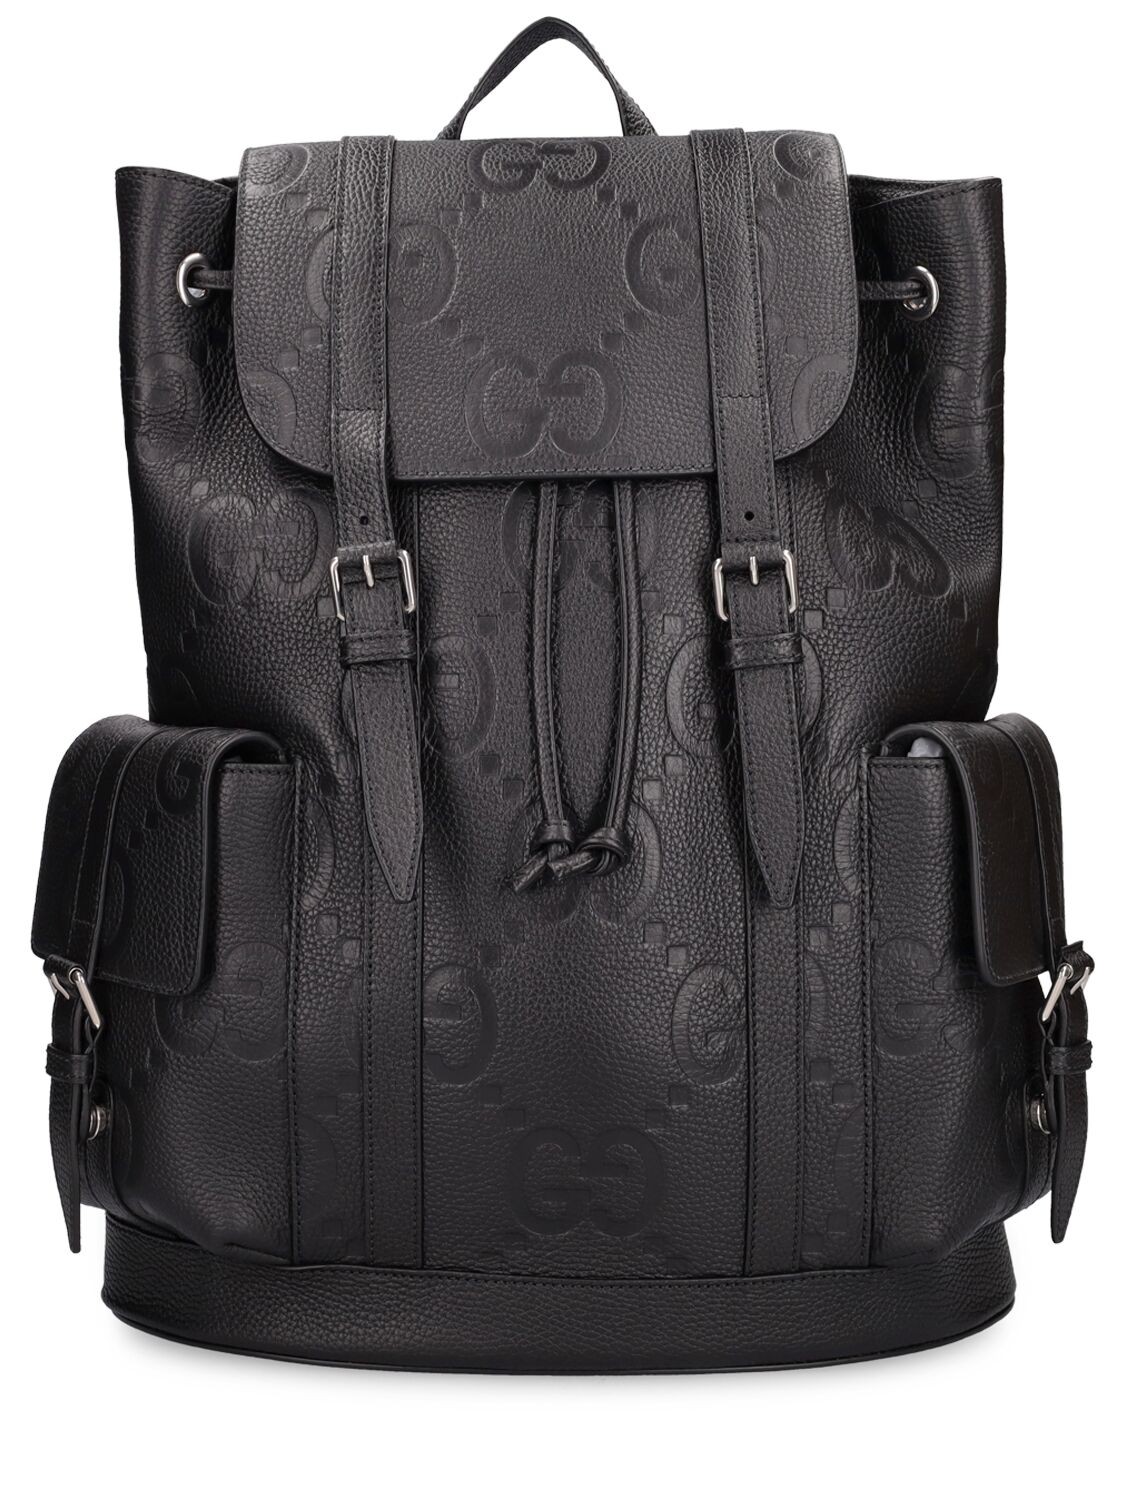 Jumbo Gg Leather Backpack